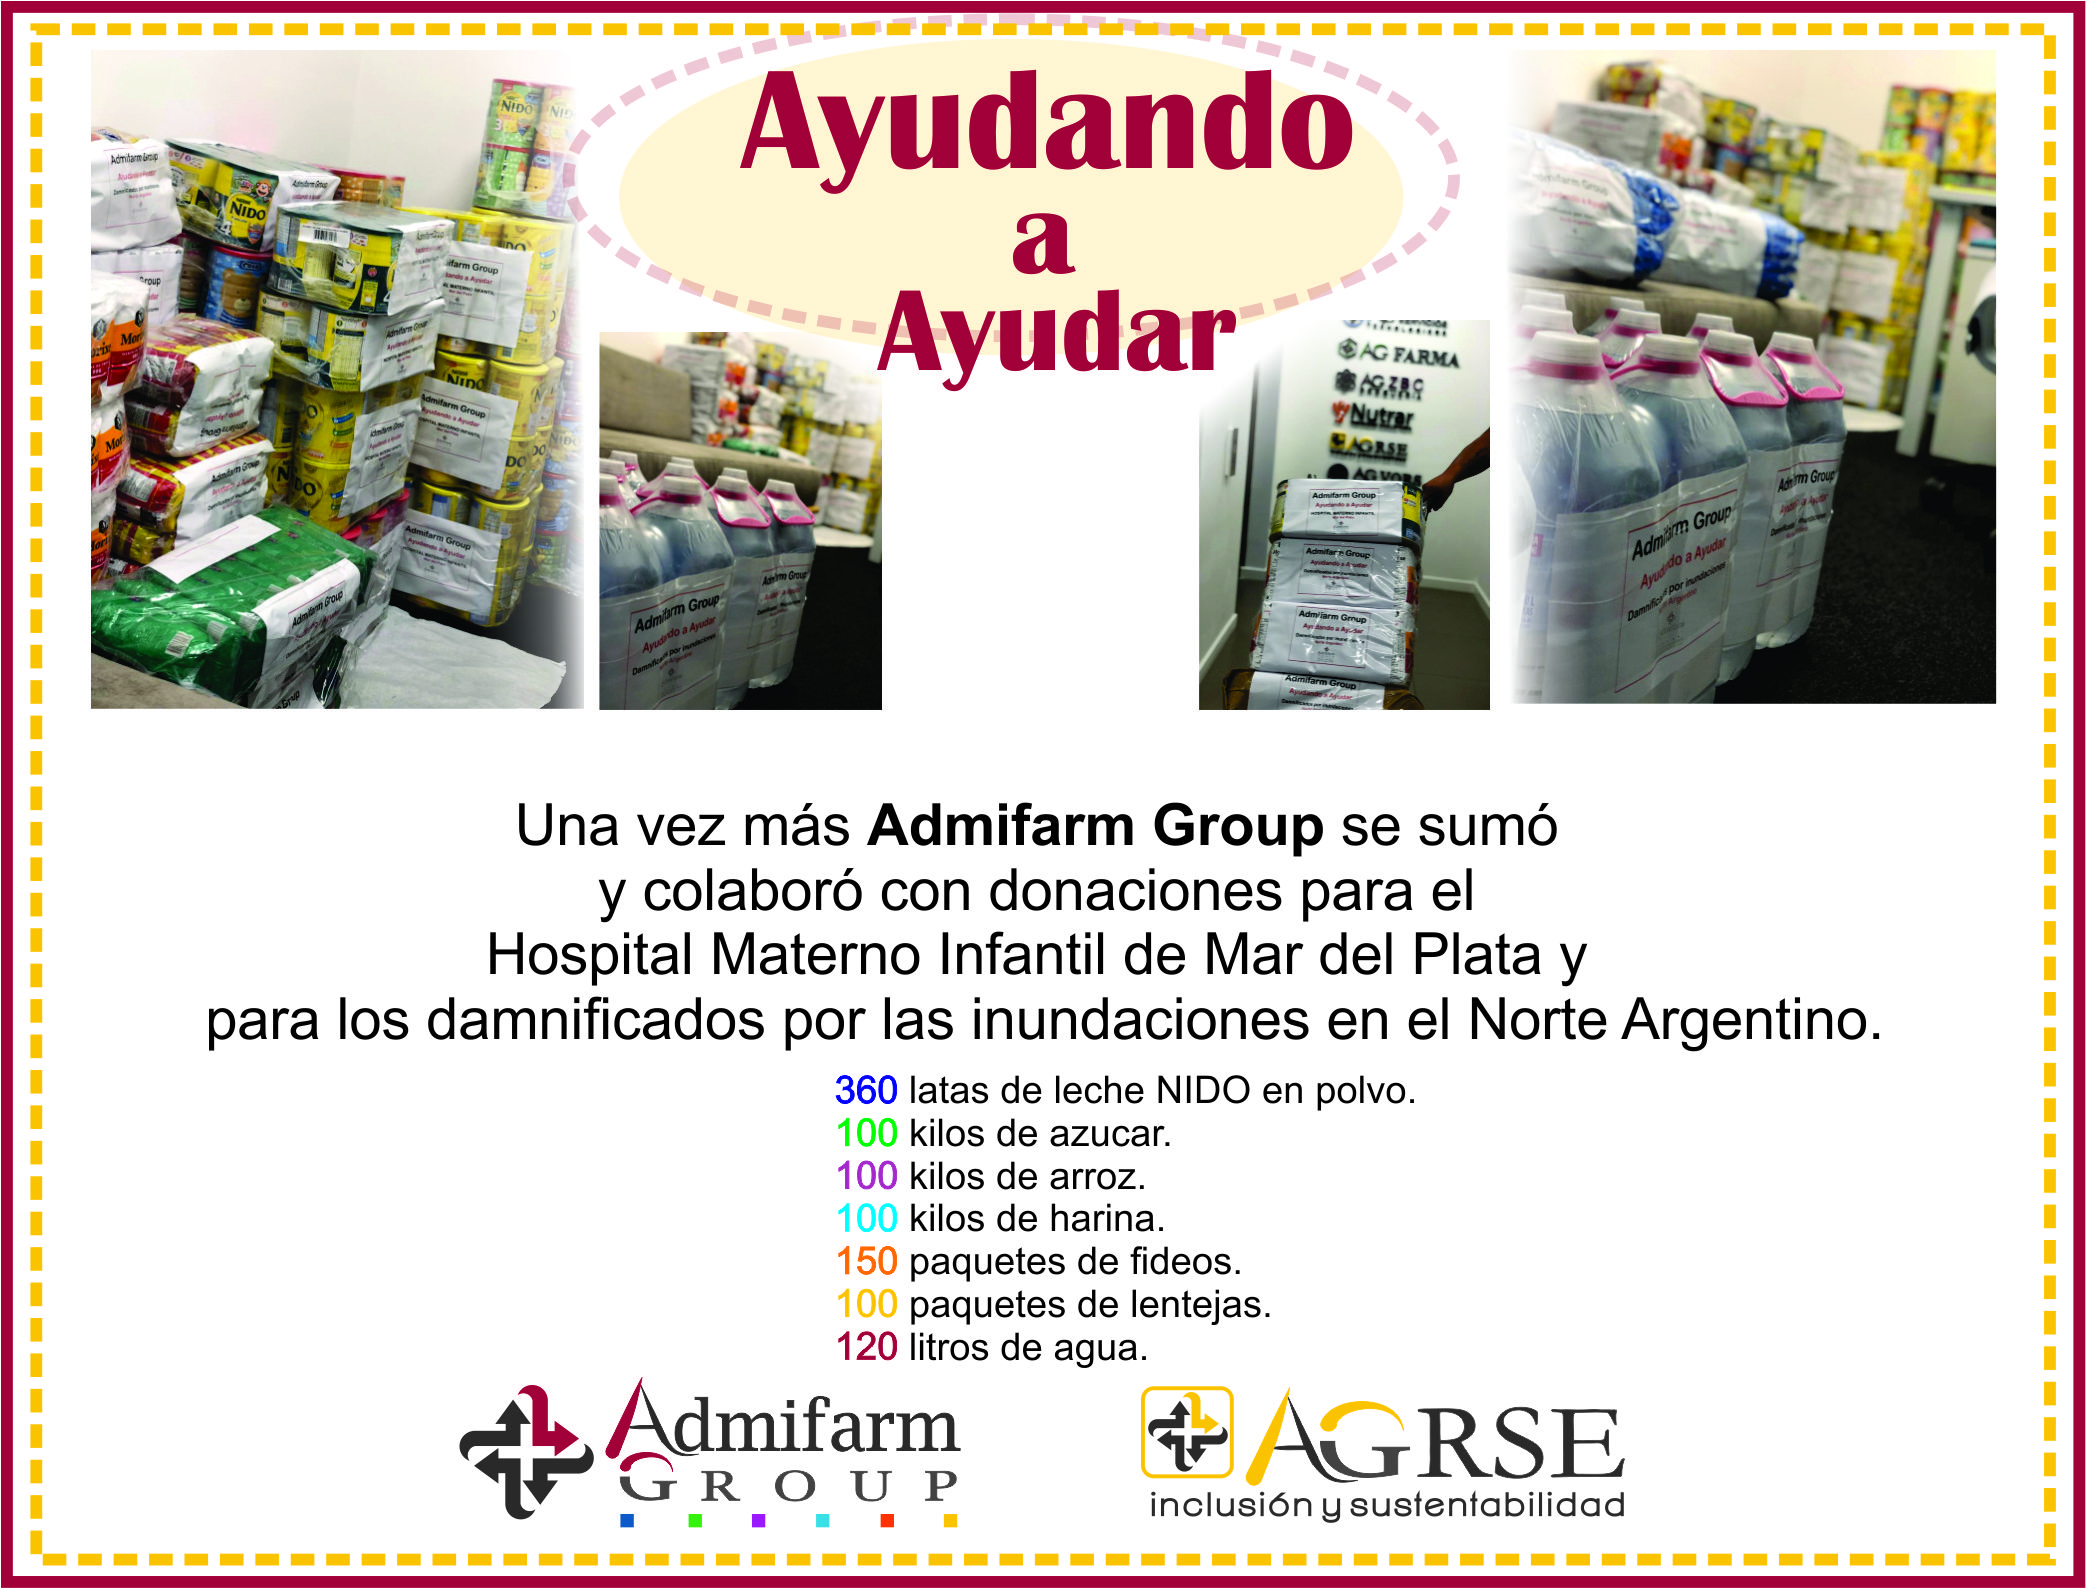 Donación por inundaciones en el Norte Argentino